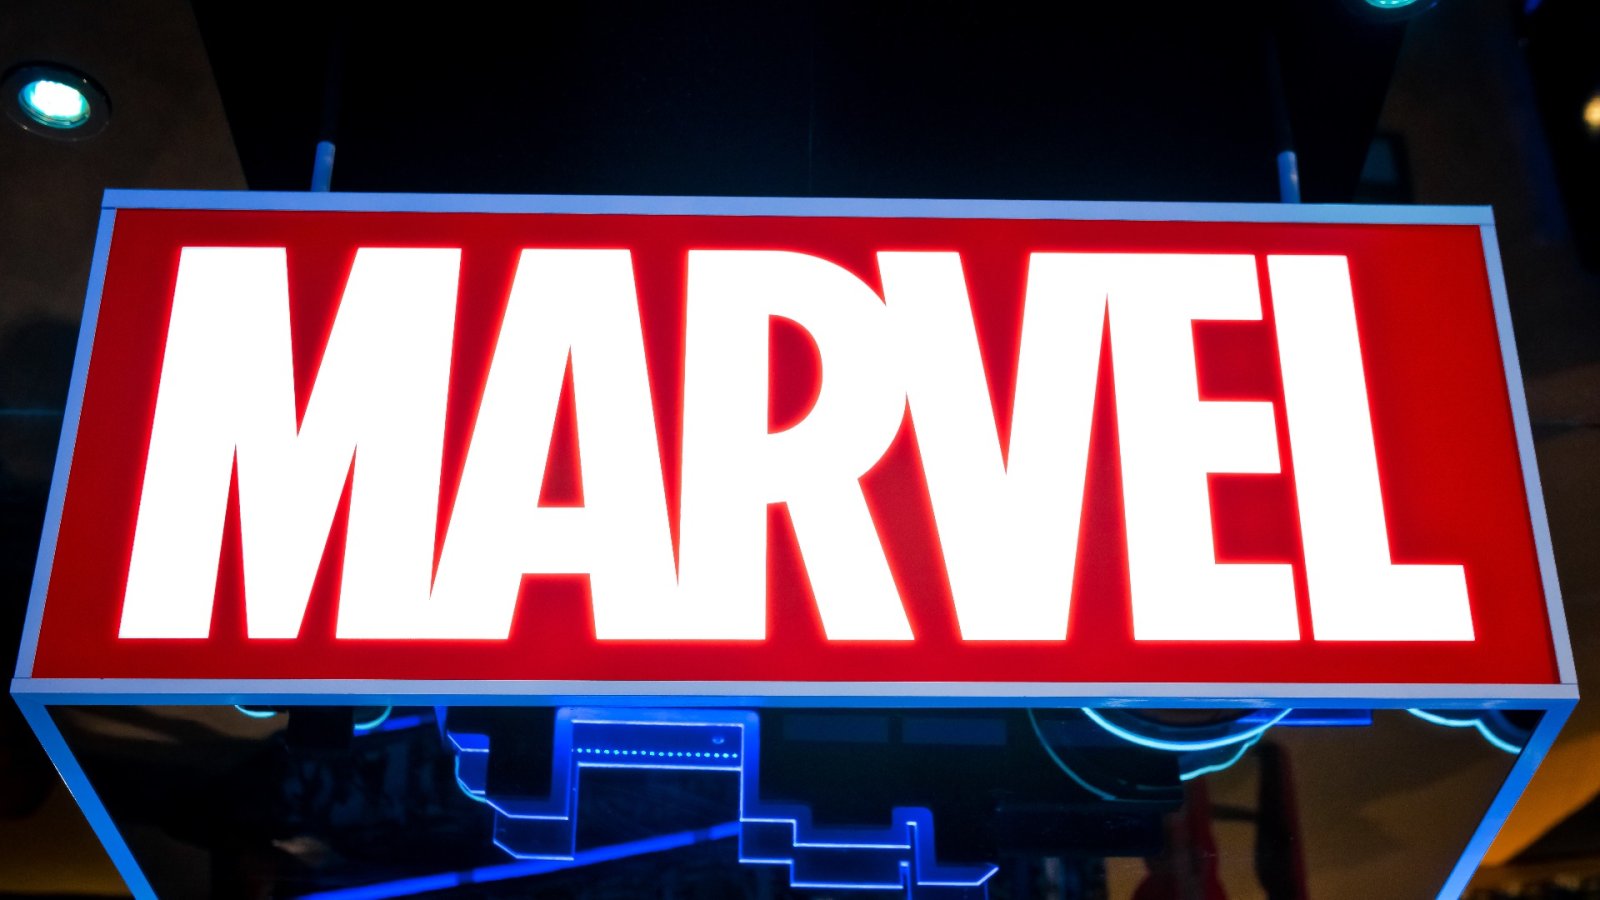 Descubra a próxima fase dos filmes da Marvel: “Homem-Formiga e a Vespa: Quantumania”